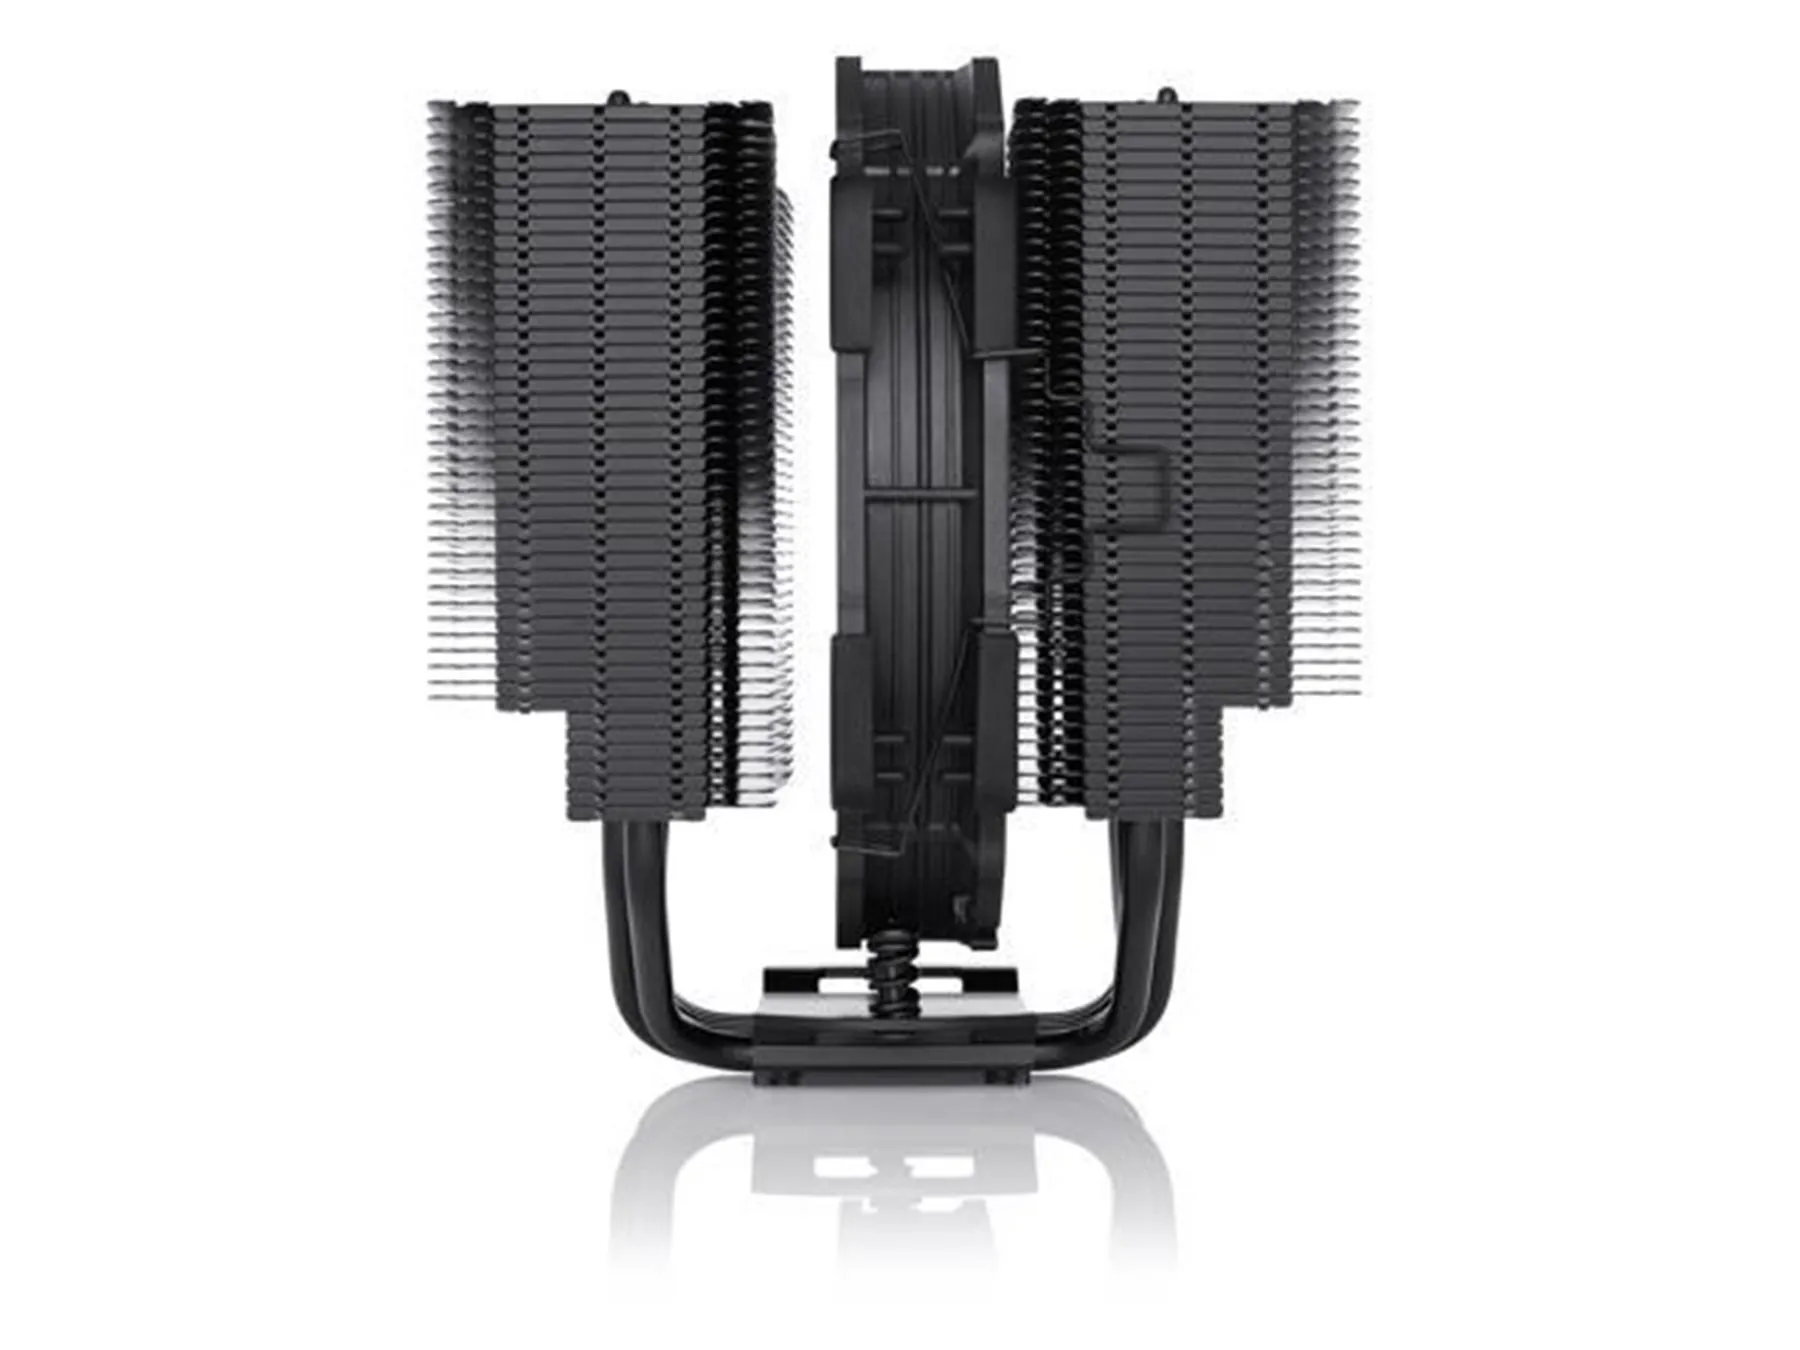 Noctua nh-d15s chromax.black, premium dual-torre cpu cooler com nf-a15 pwm 140mm (preto)